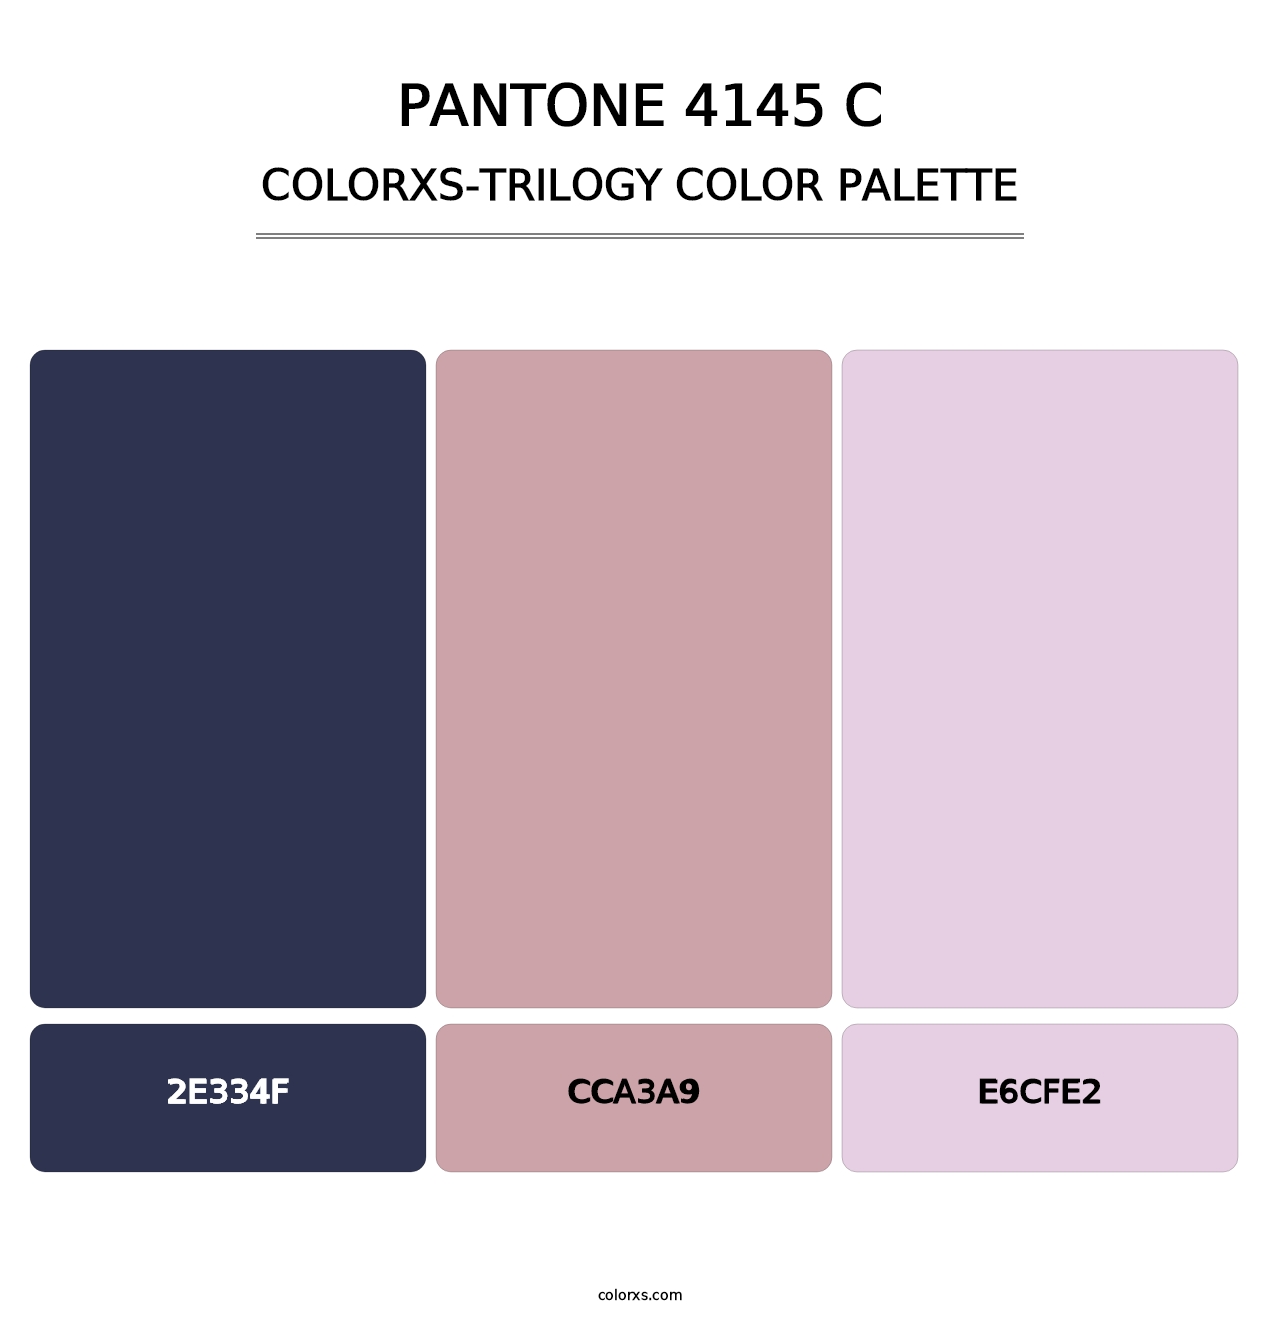 PANTONE 4145 C - Colorxs Trilogy Palette